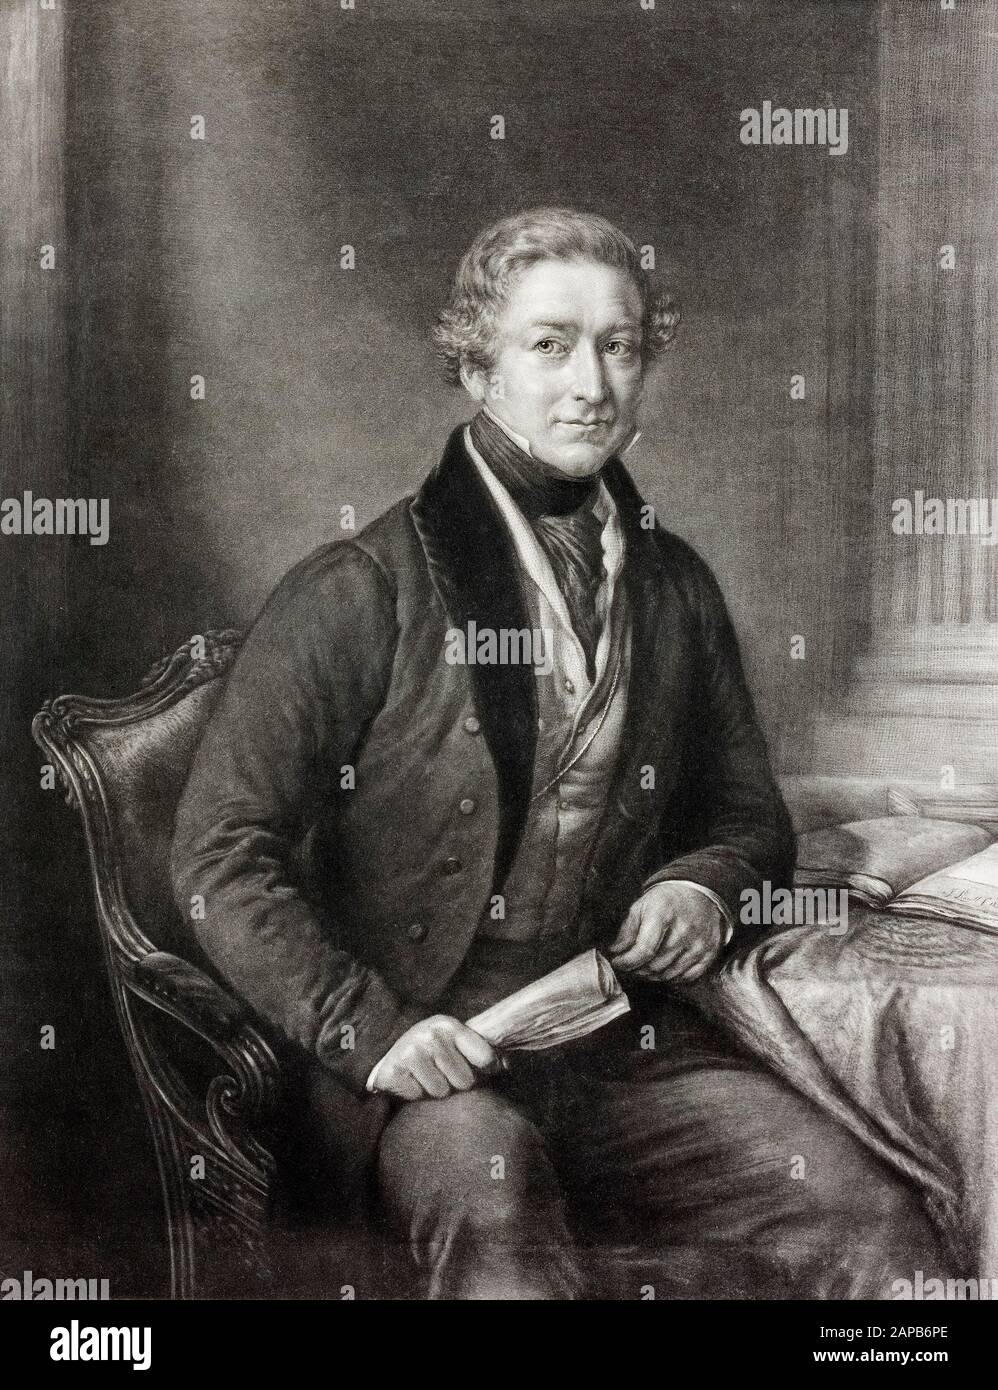 Sir Robert Peel (1788-1850), 2ème Baronet, ancien premier ministre du Royaume-Uni, portrait, 1850 Banque D'Images